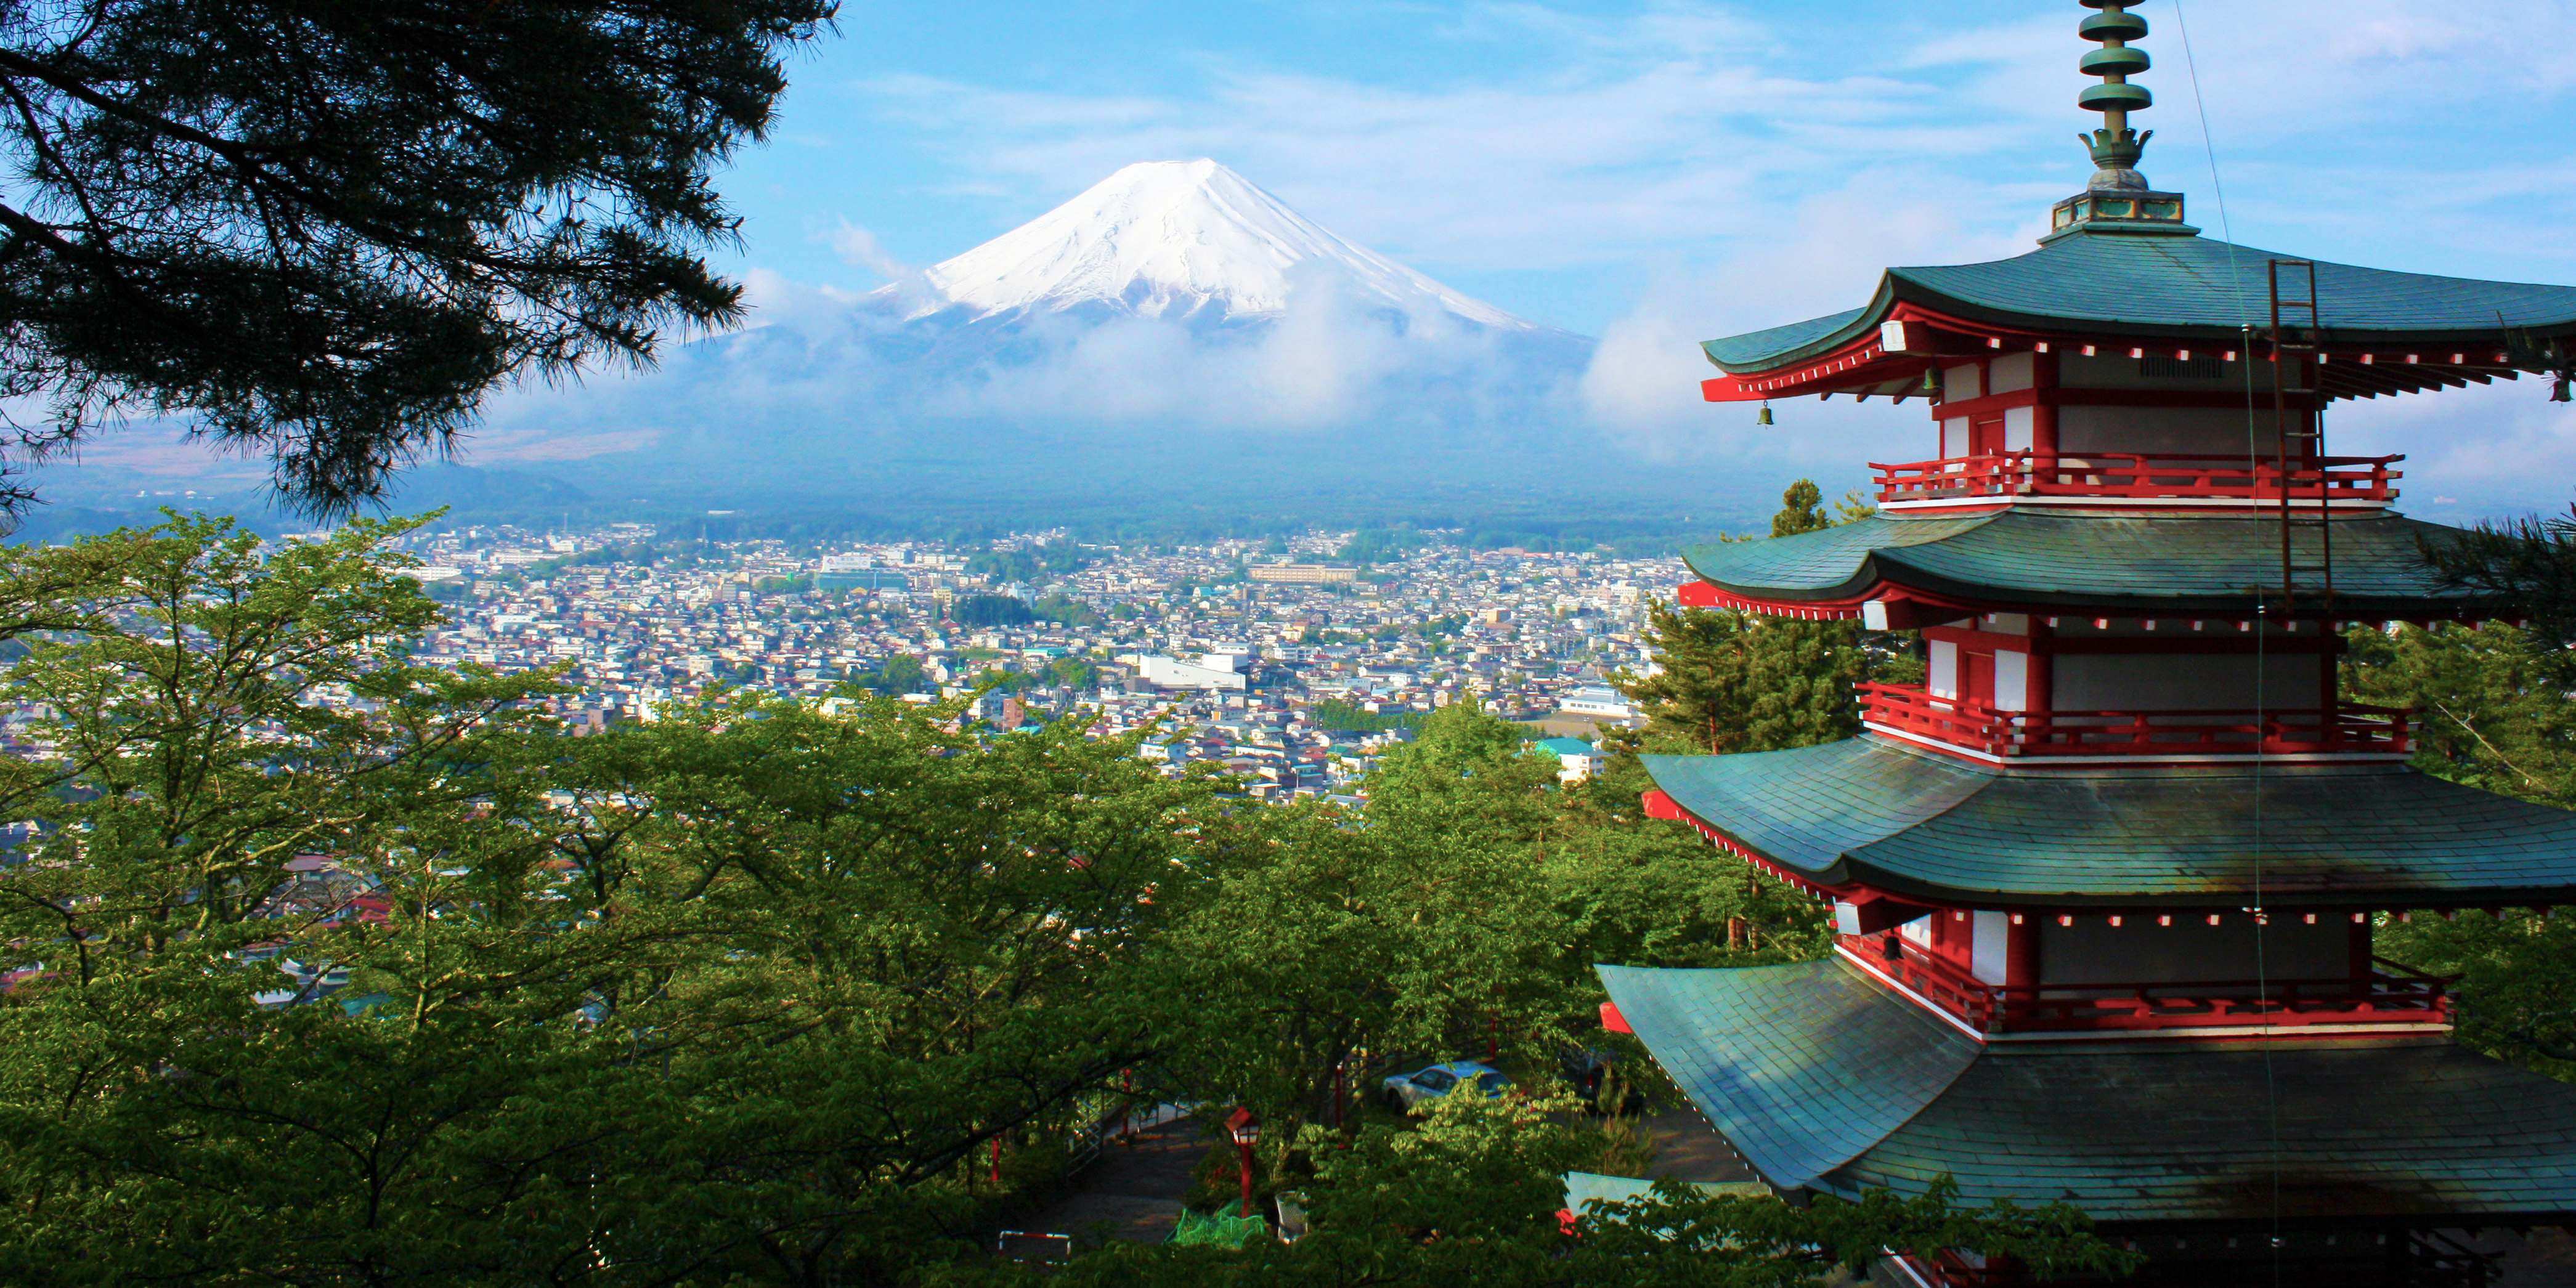 Mt. Fuji with Chureito Pagoda - Fujiyoshida, Japan